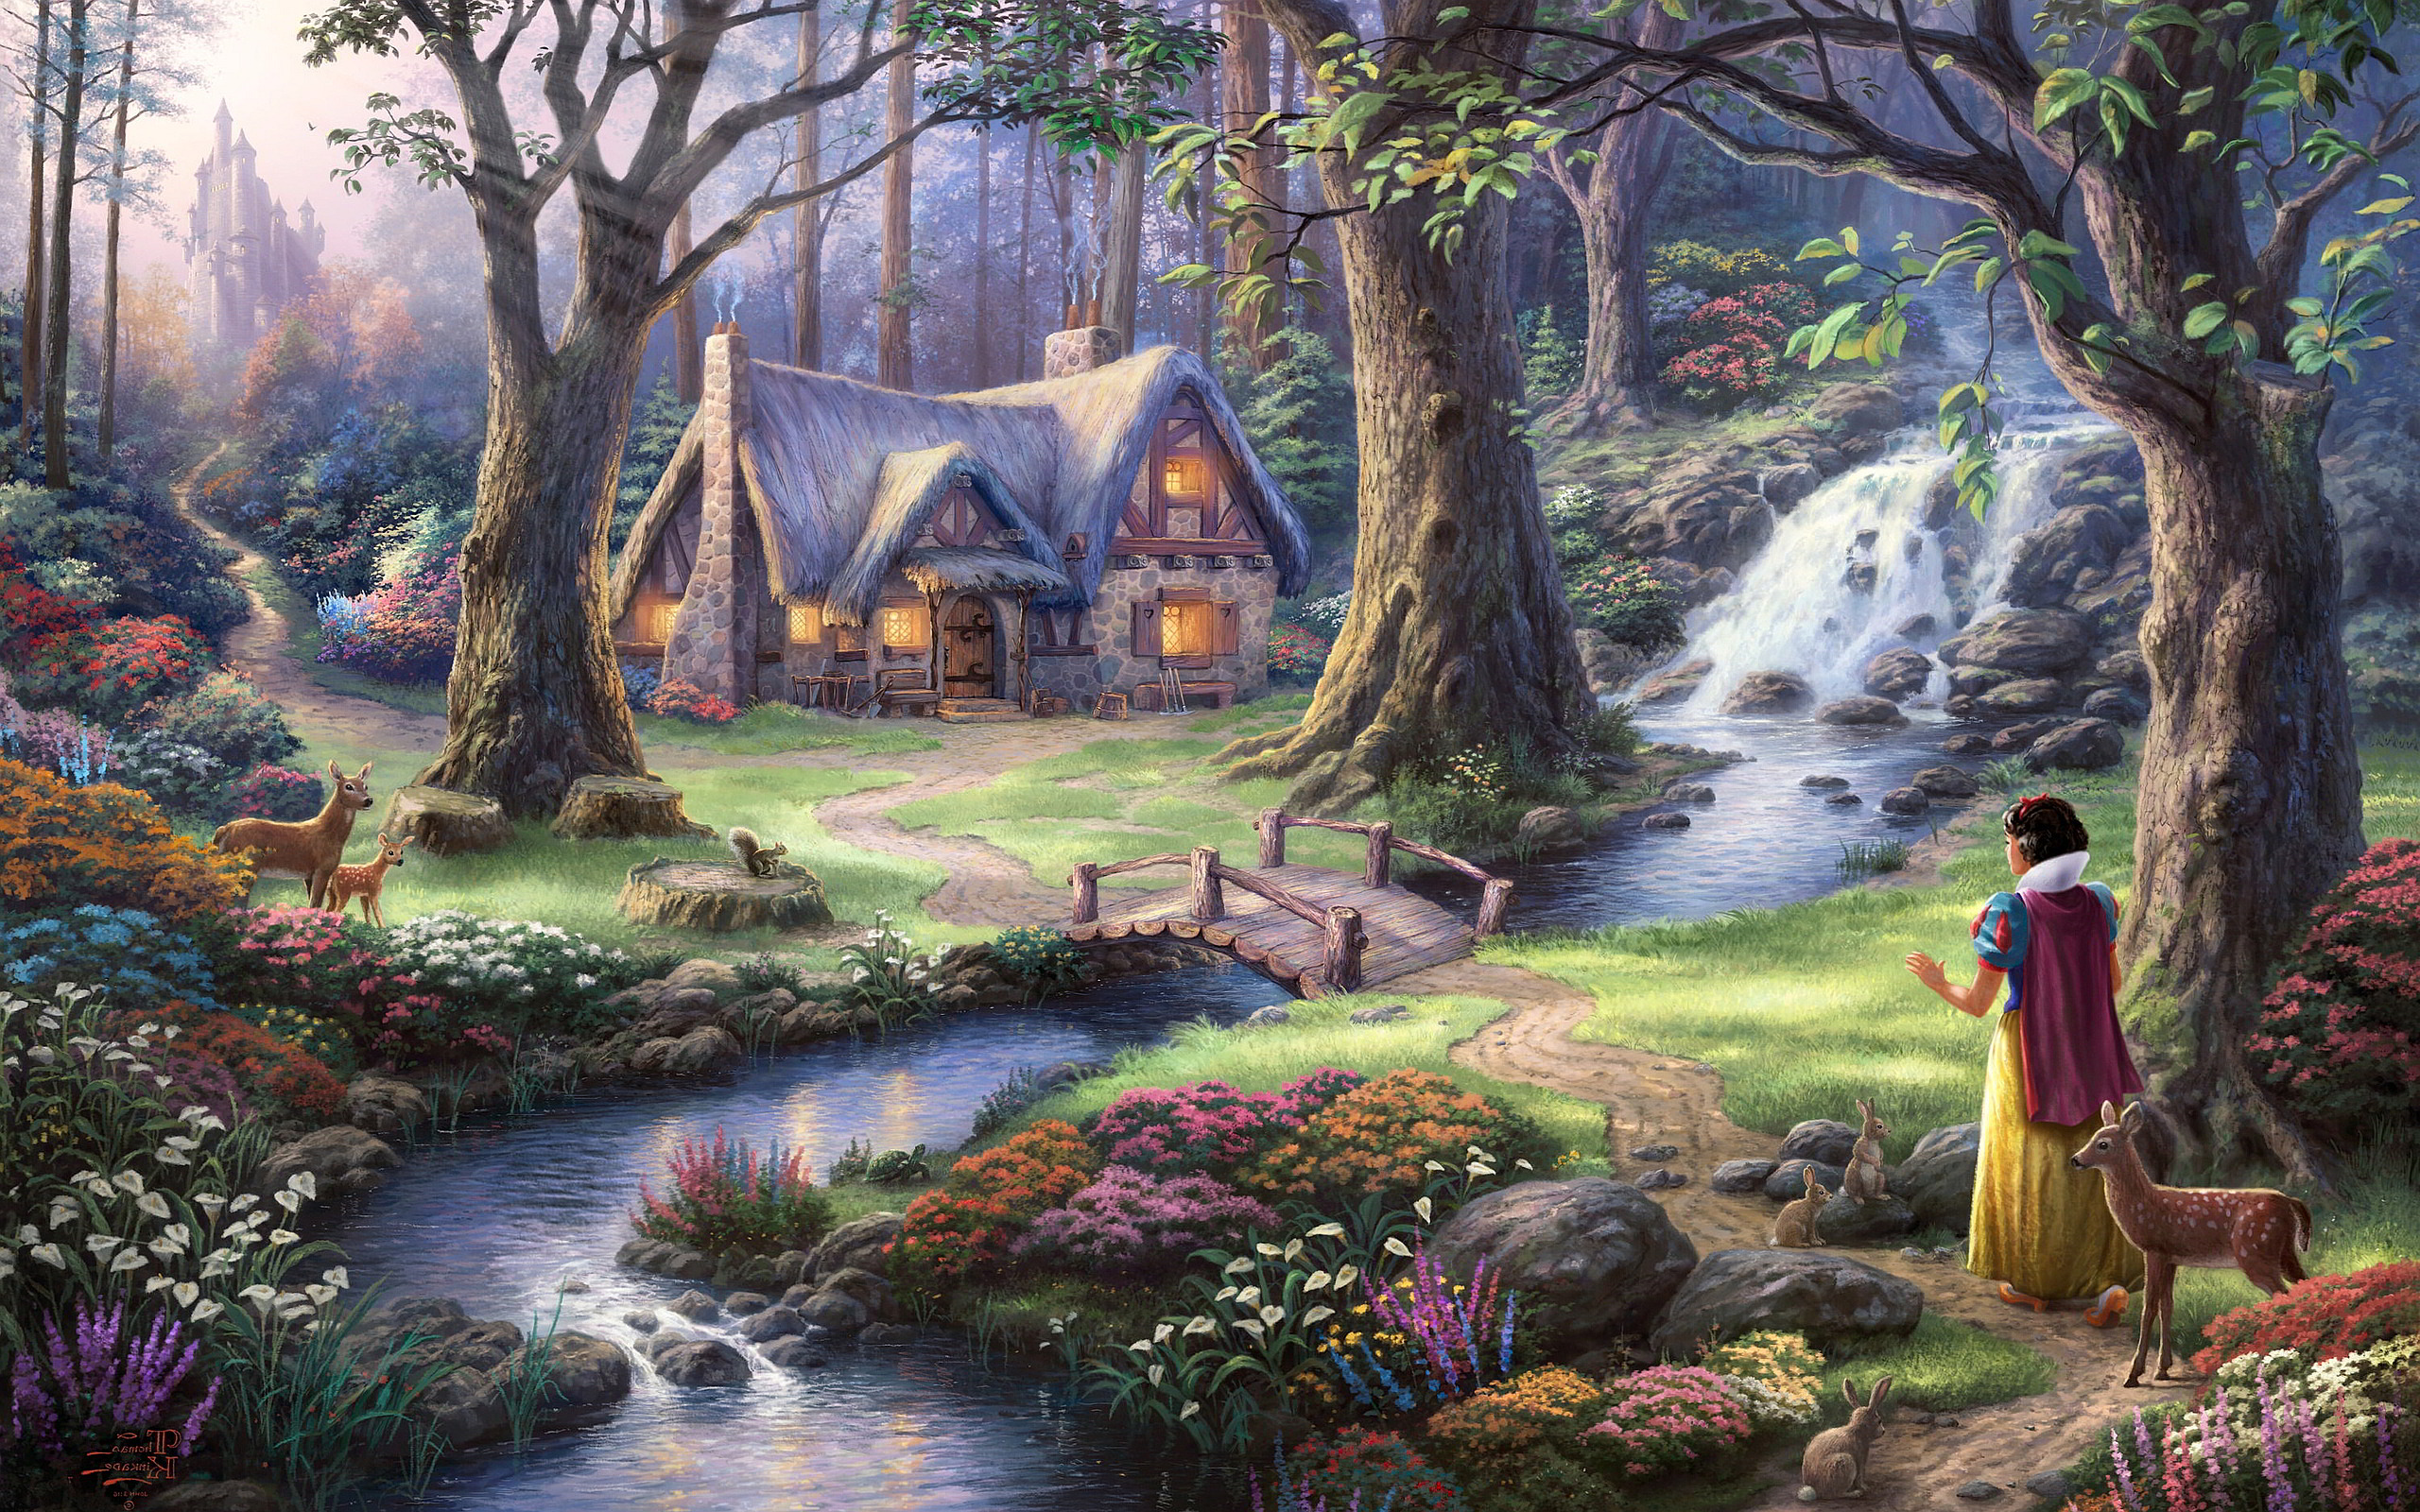 白雪姫壁紙,自然の風景,自然,ペインティング,神話,森林